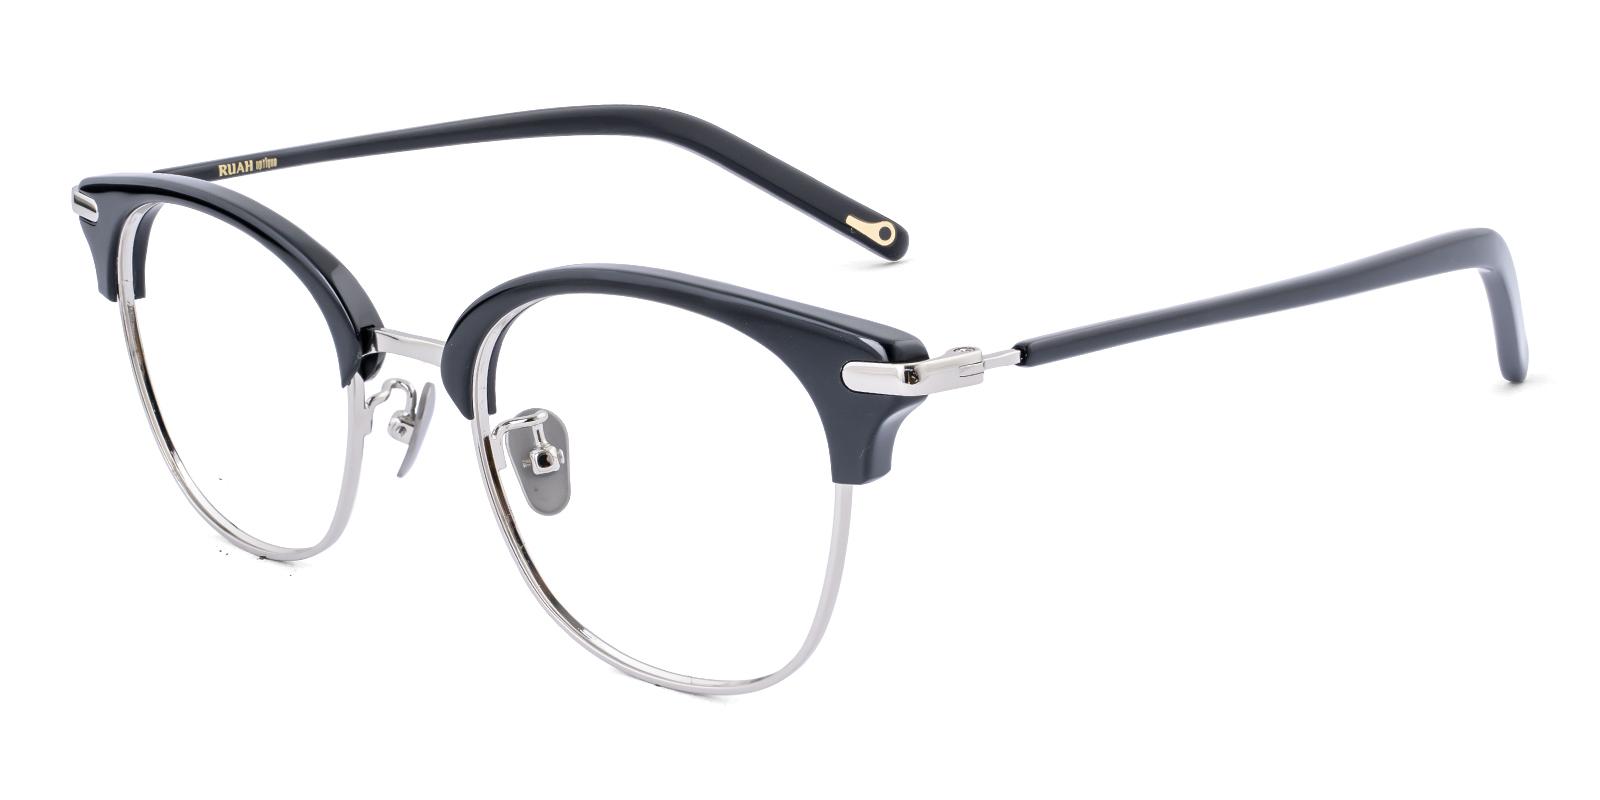 Emet Black Acetate , Metal Eyeglasses , NosePads Frames from ABBE Glasses